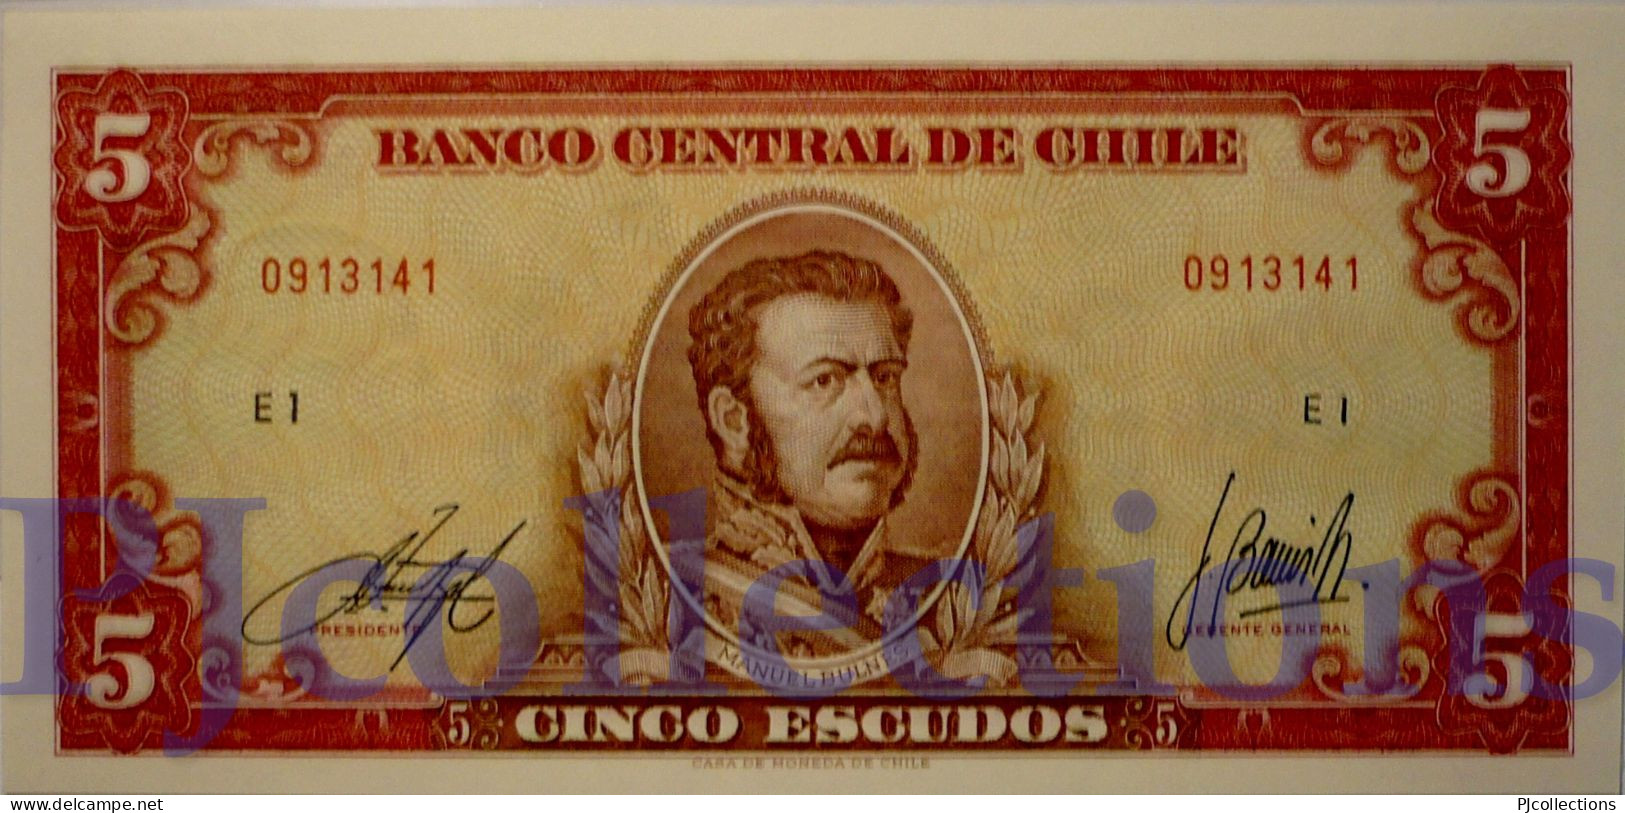 CHILE 5 ESCUDOS 1964 PICK 138 UNC - Chili